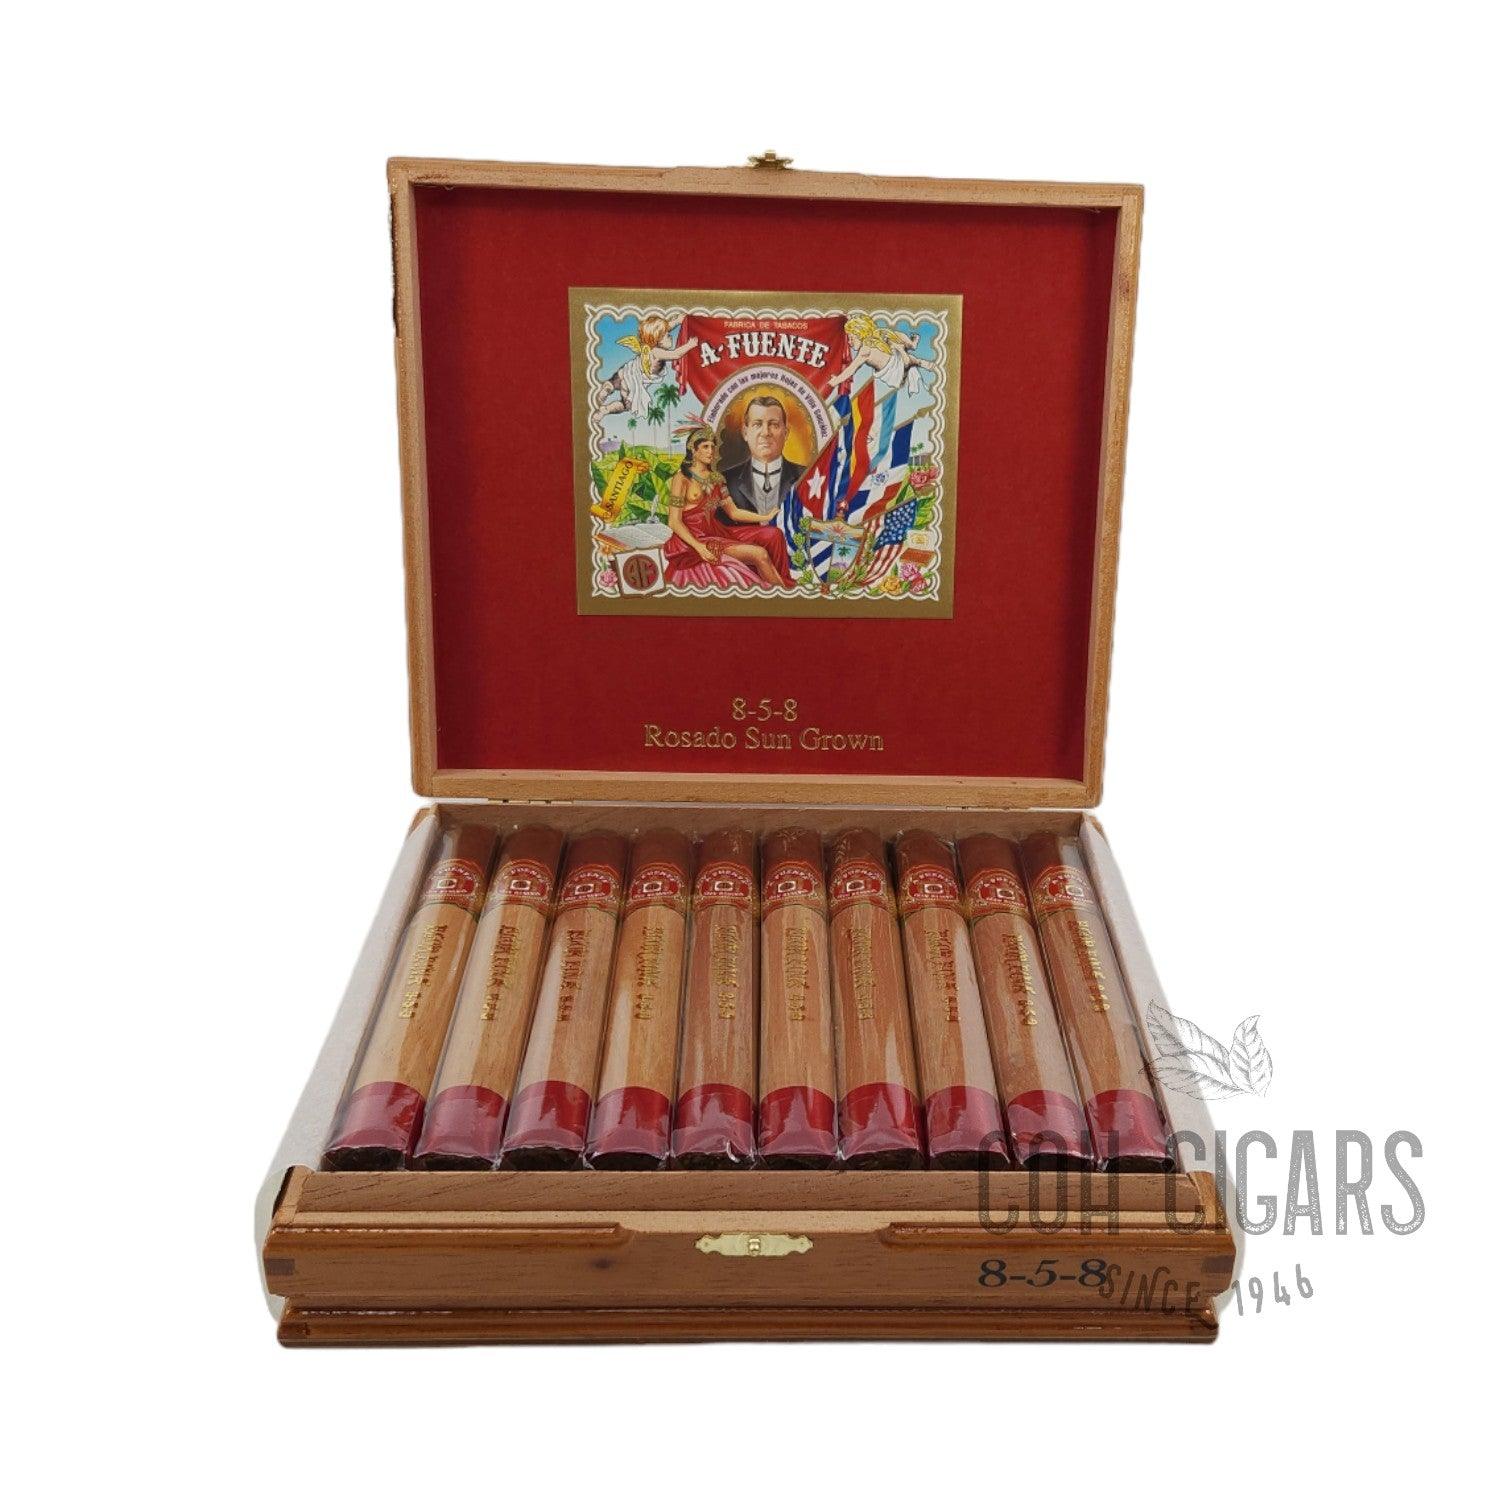 Arturo Fuente Cigar | Rosado Sun Grown 8-5-8 | Box 20 - HK CohCigars